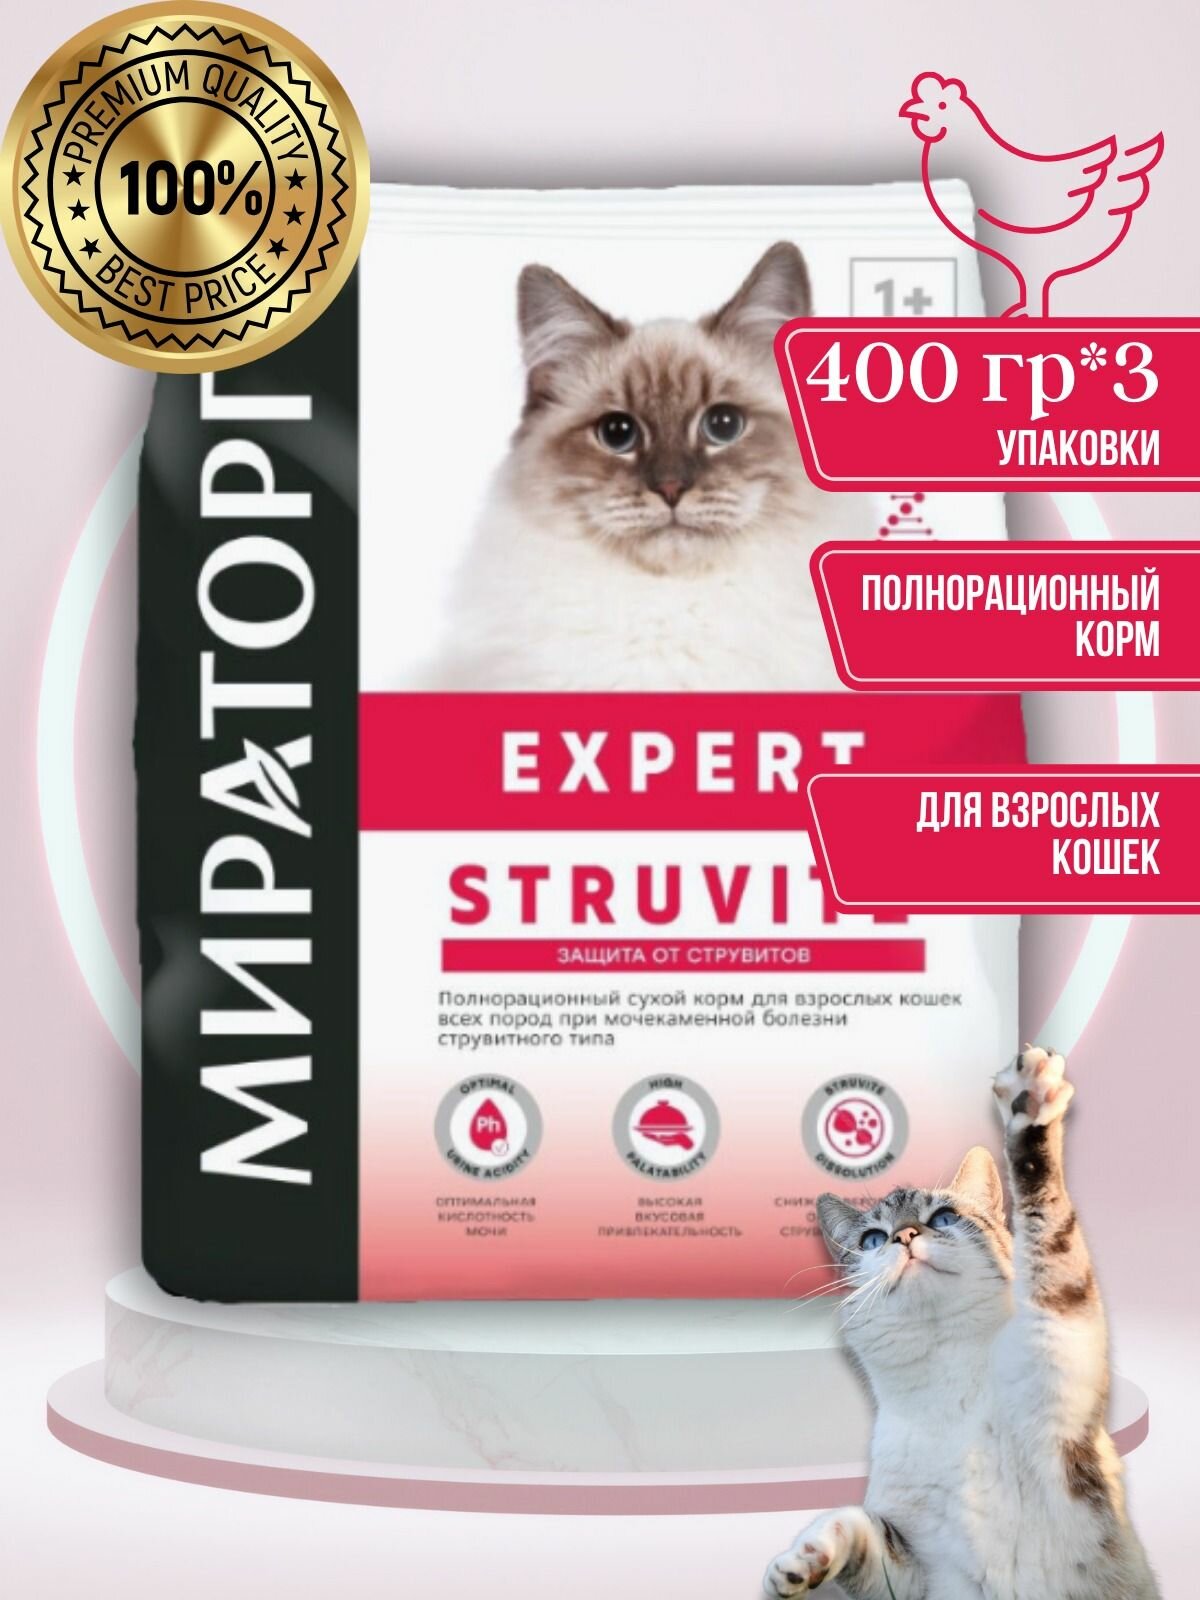 Корм Expert Struvite для взрослых кошек всех пород при мочекаменной болезни струвитного типа, 3 упаковки/400 грамм.